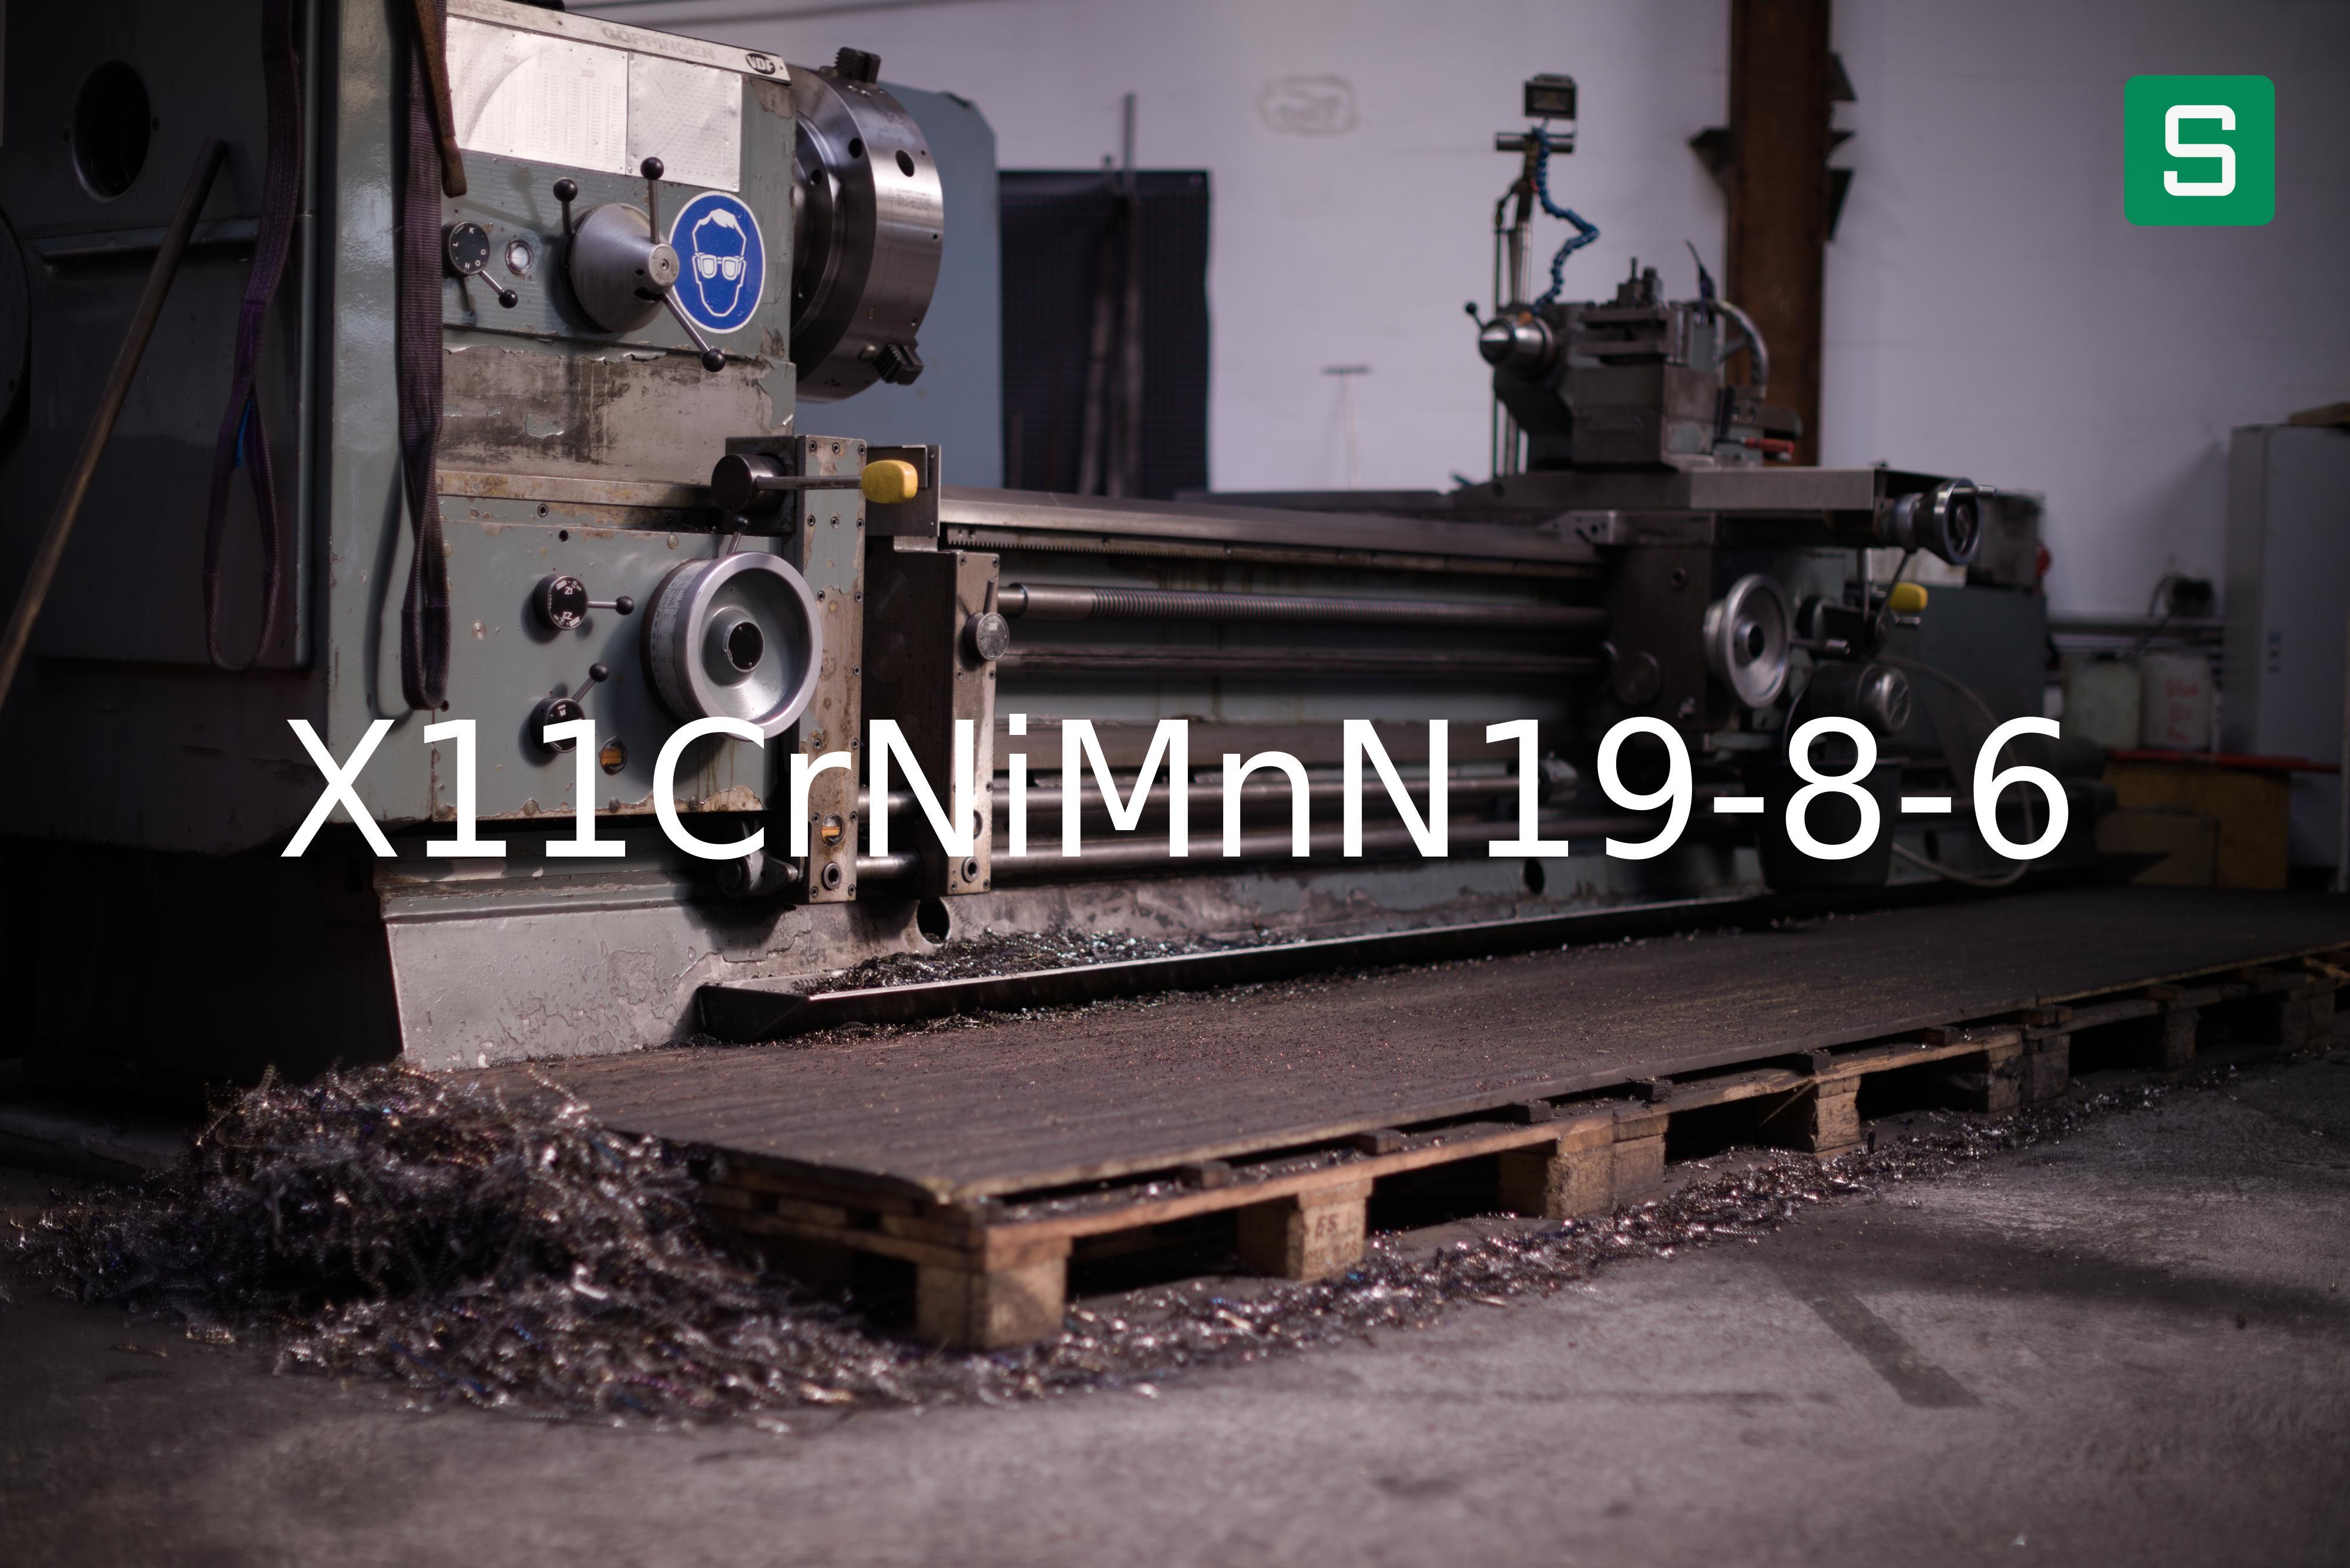 Steel Material: X11CrNiMnN19-8-6